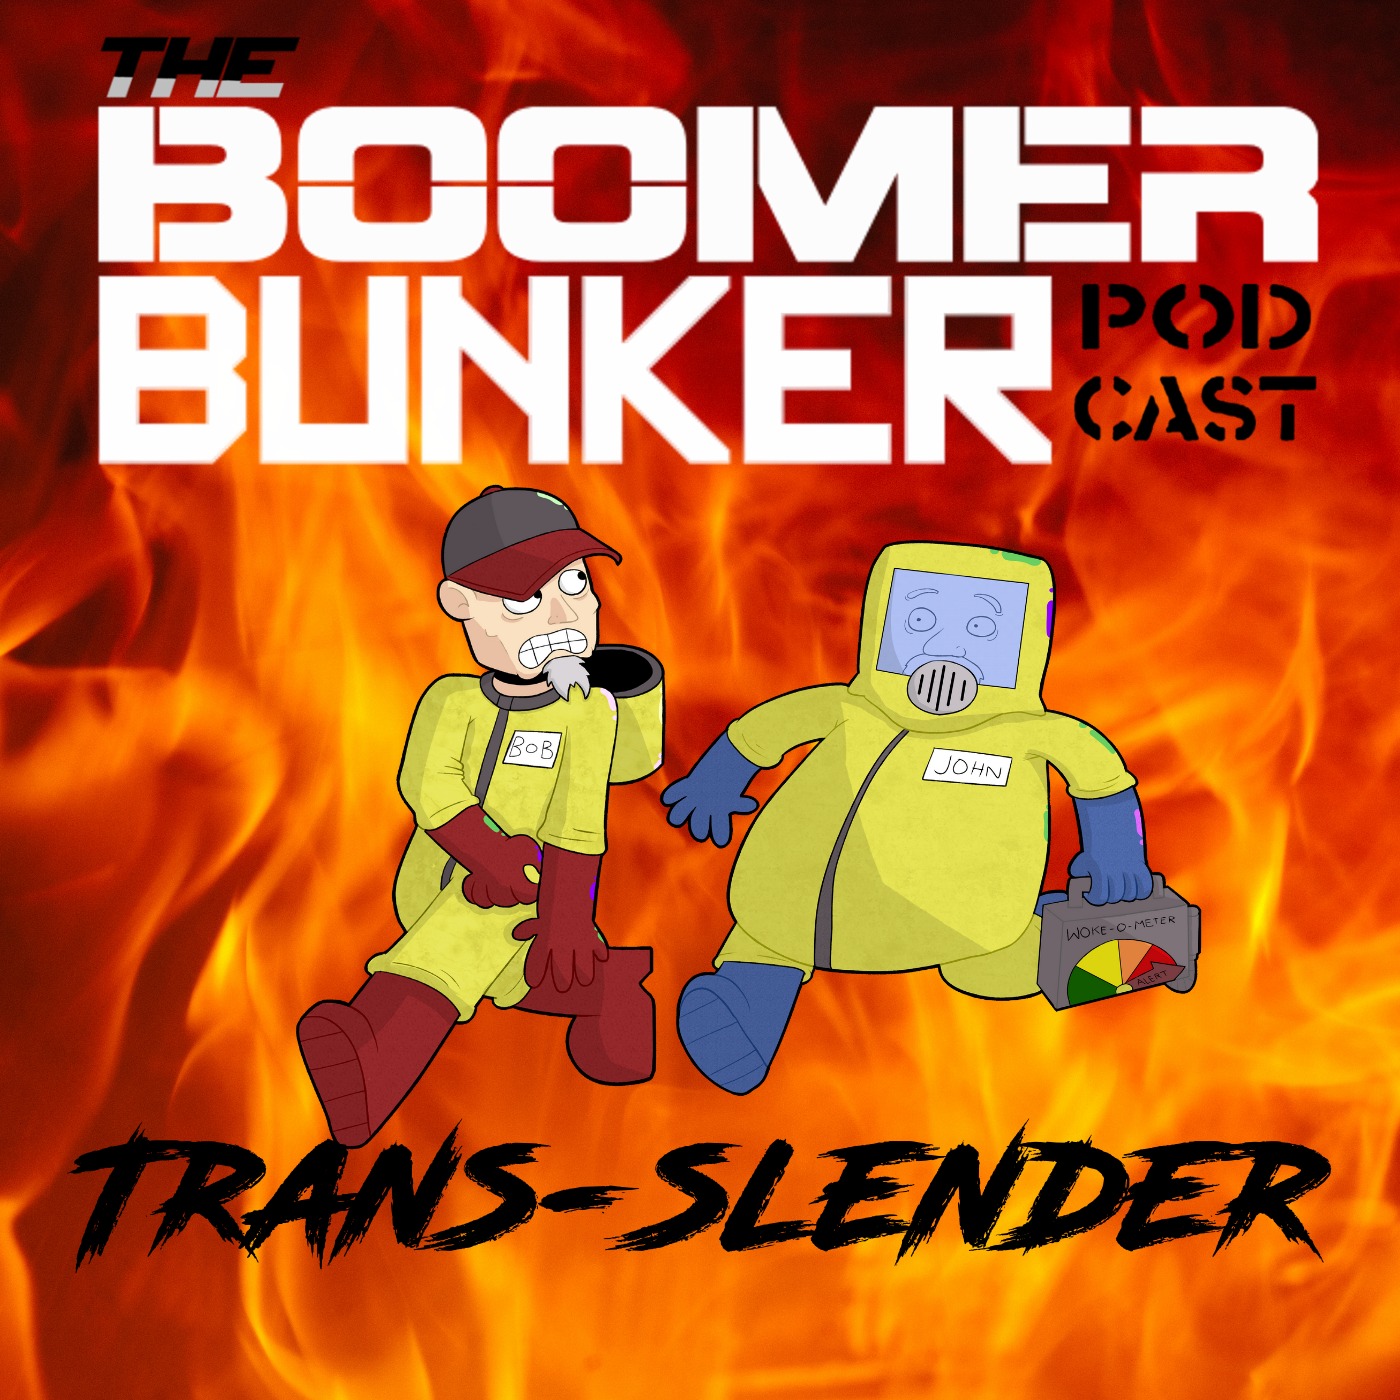 Trans-slender | Episode 026